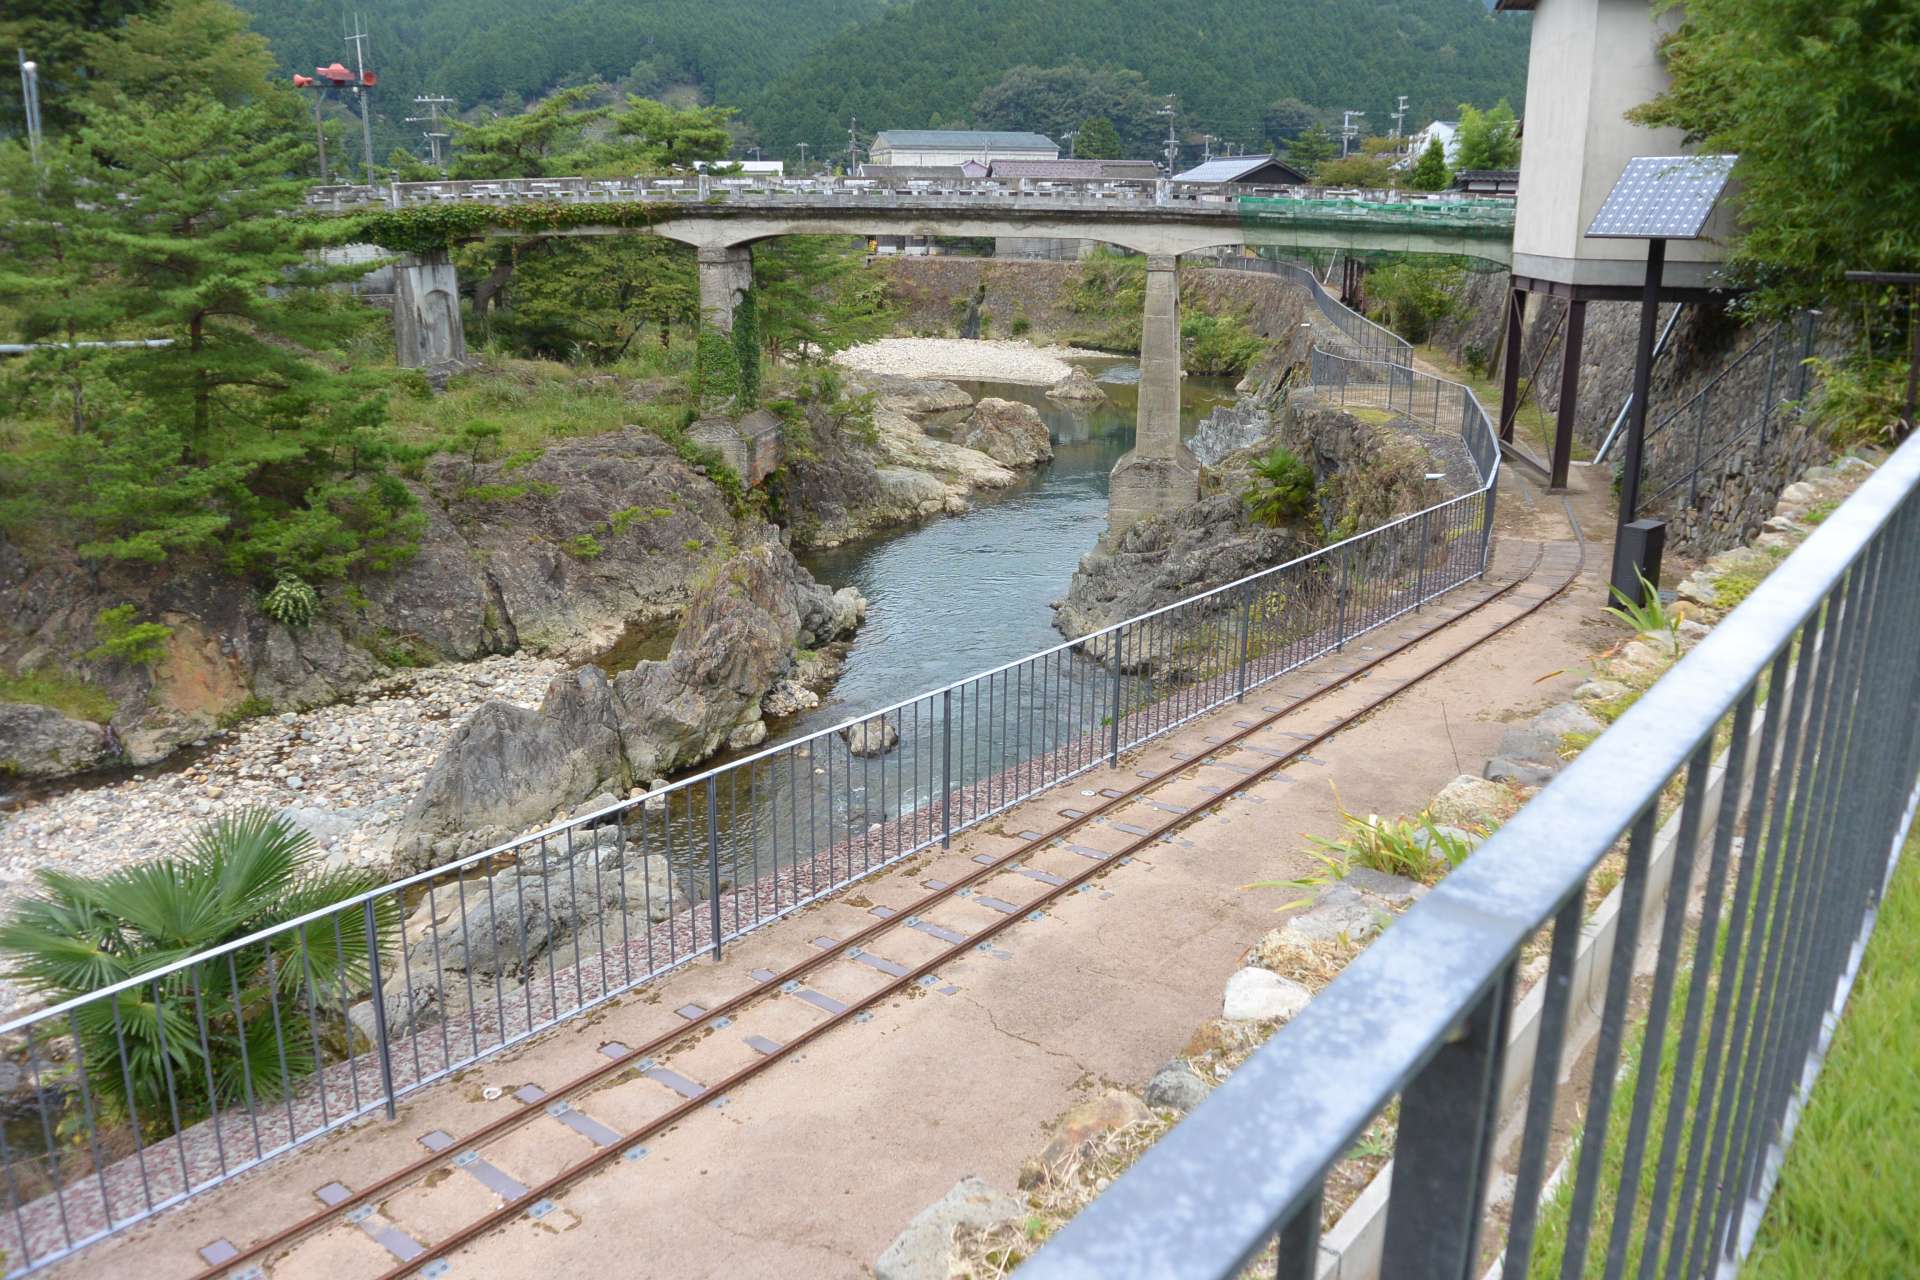 为了运输白银，1870 年代左右在生野和姬路之间修建了一条道路，这是日本第一条工业高速公路。至今仍能看到支撑生野银矿和矿业小镇繁荣的历史文化之路。